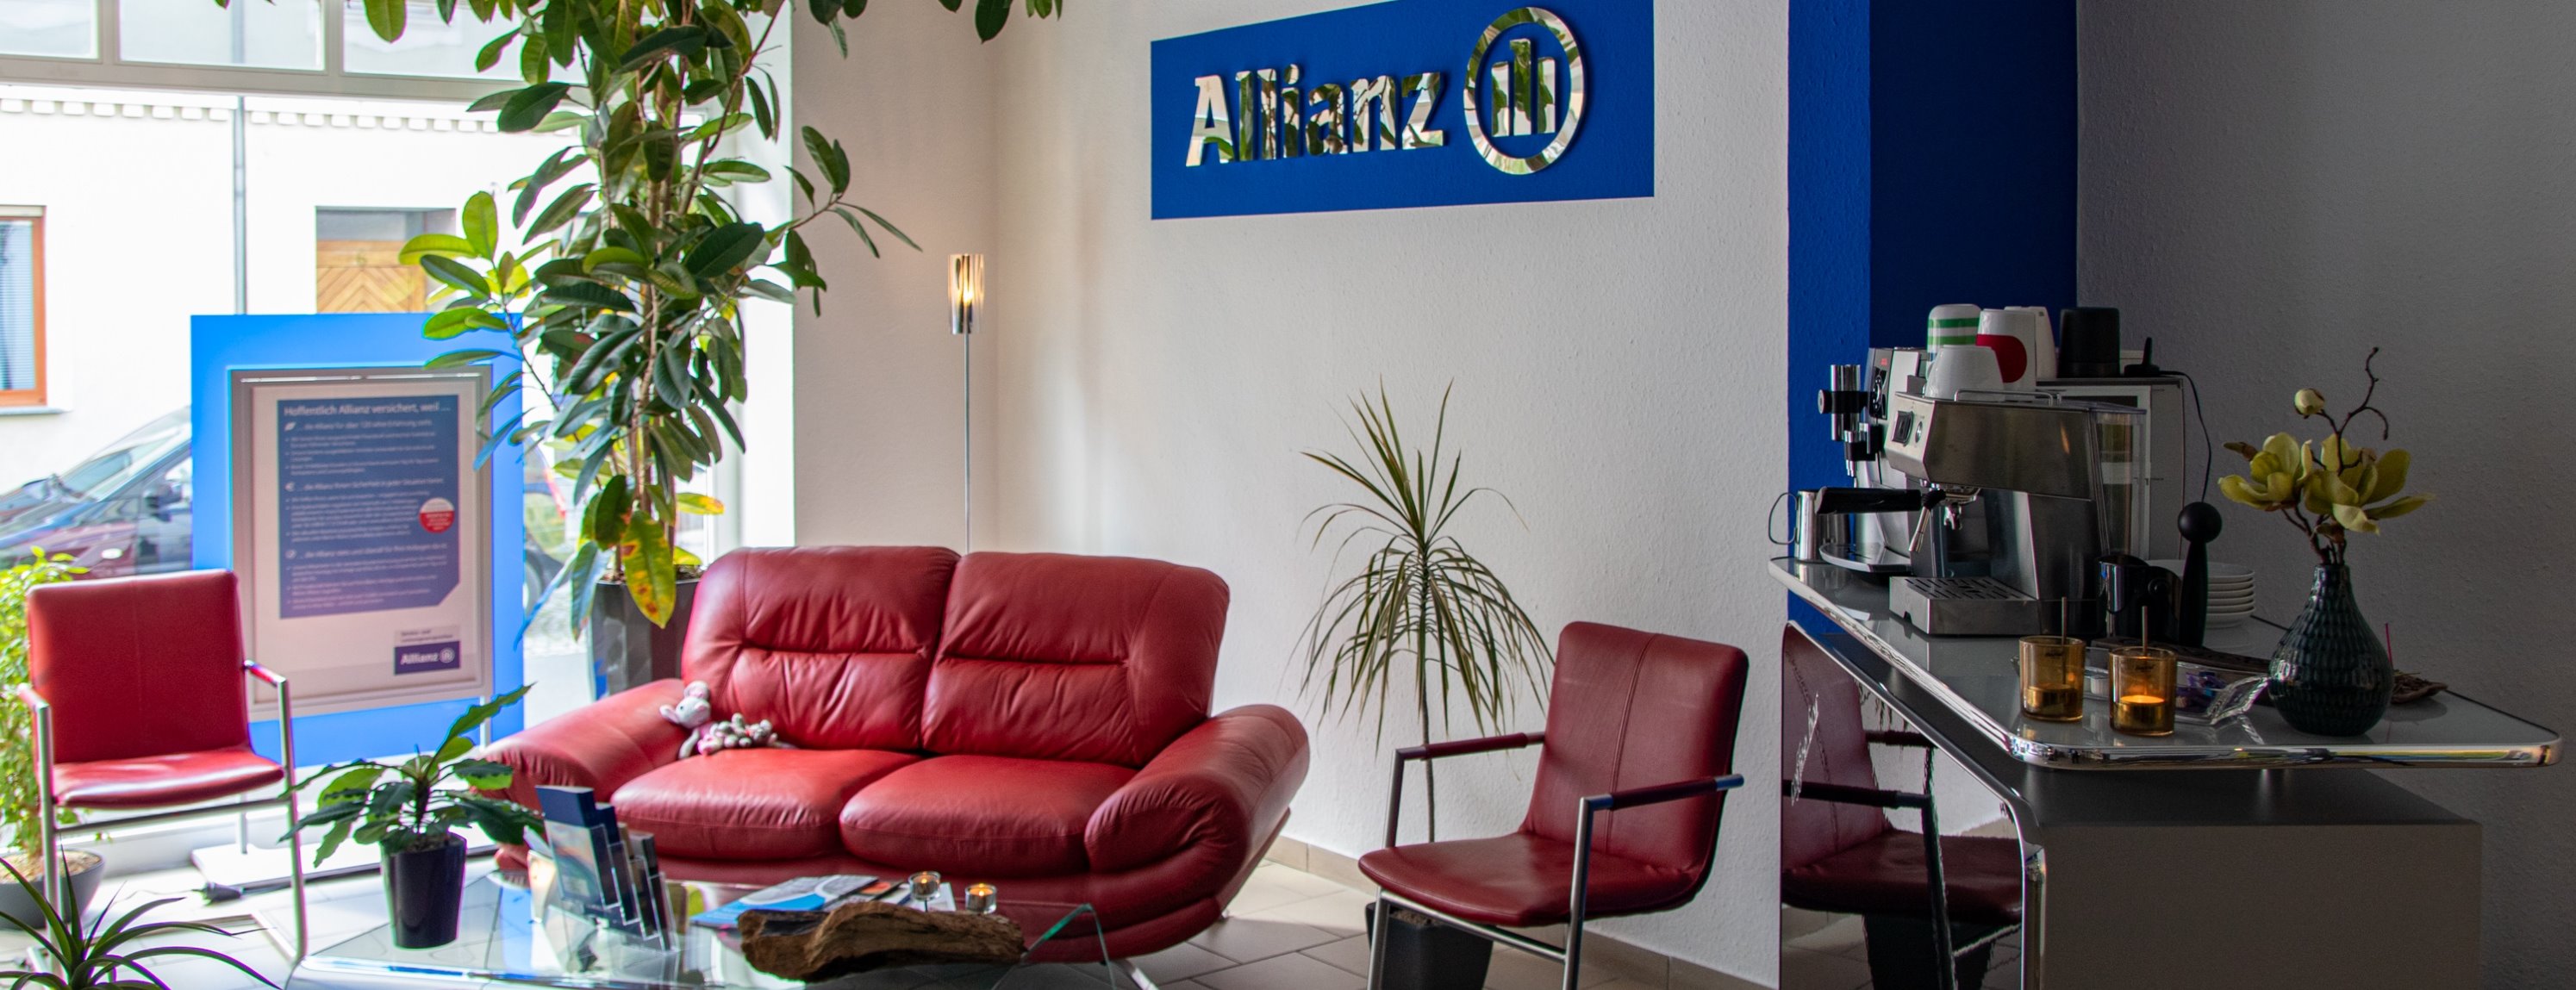 Allianz Versicherung Heike Heidel Meuselwitz - Allianz Agentur Heidel Meuselwitz Lounge